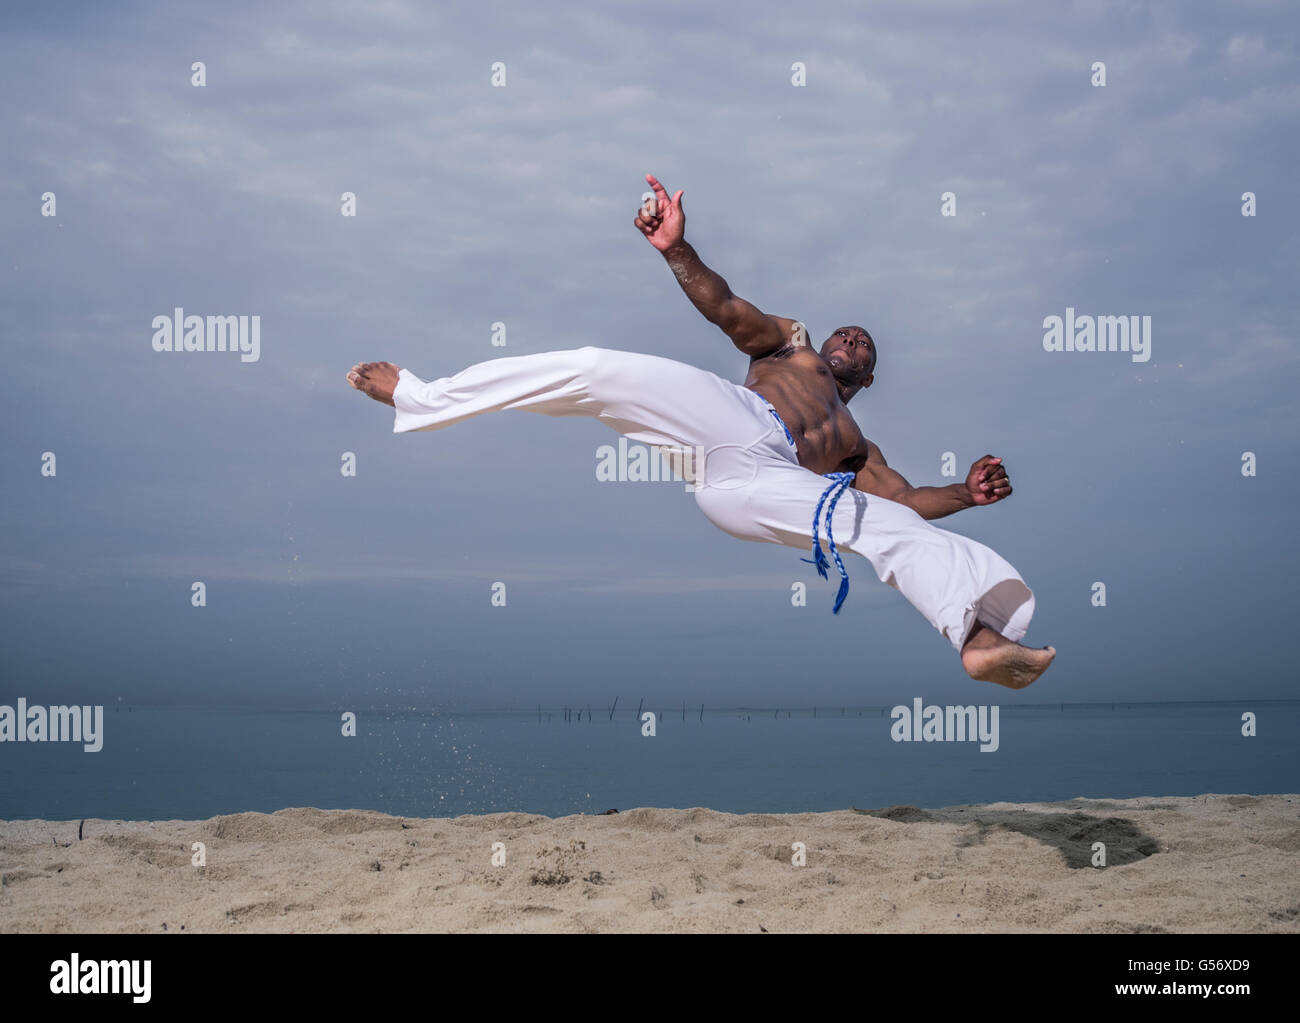 Capoeira Brazilian Martial art on the beach Stock Photo